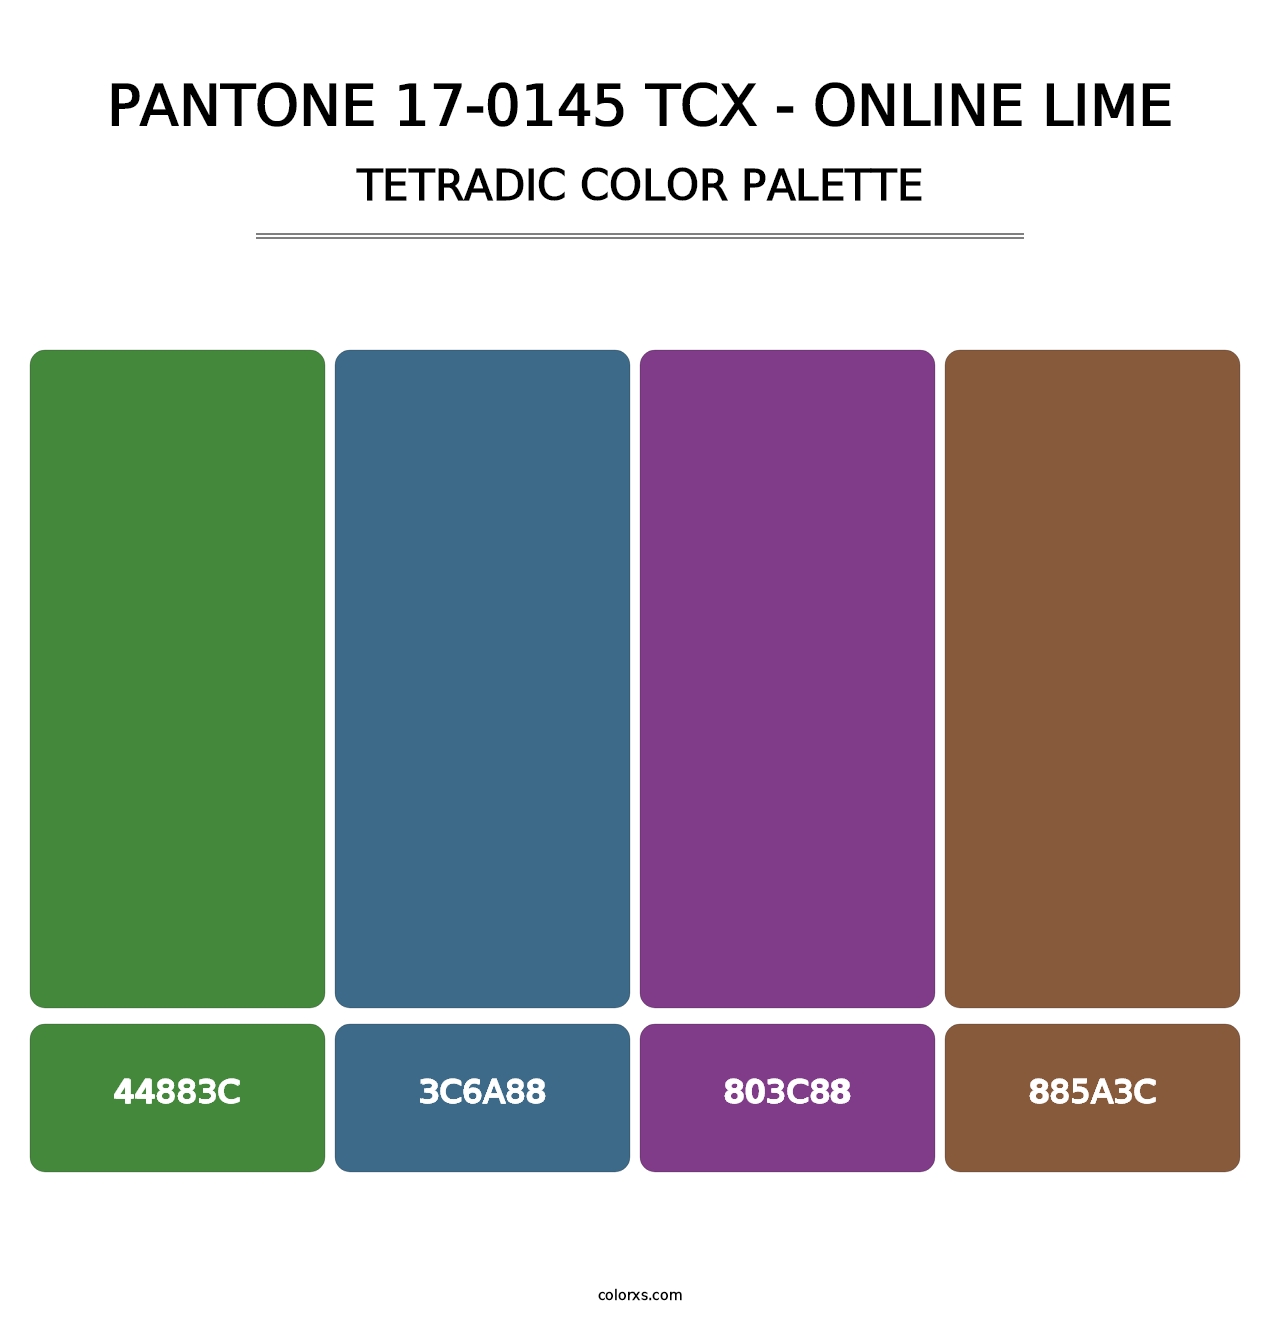 PANTONE 17-0145 TCX - Online Lime - Tetradic Color Palette